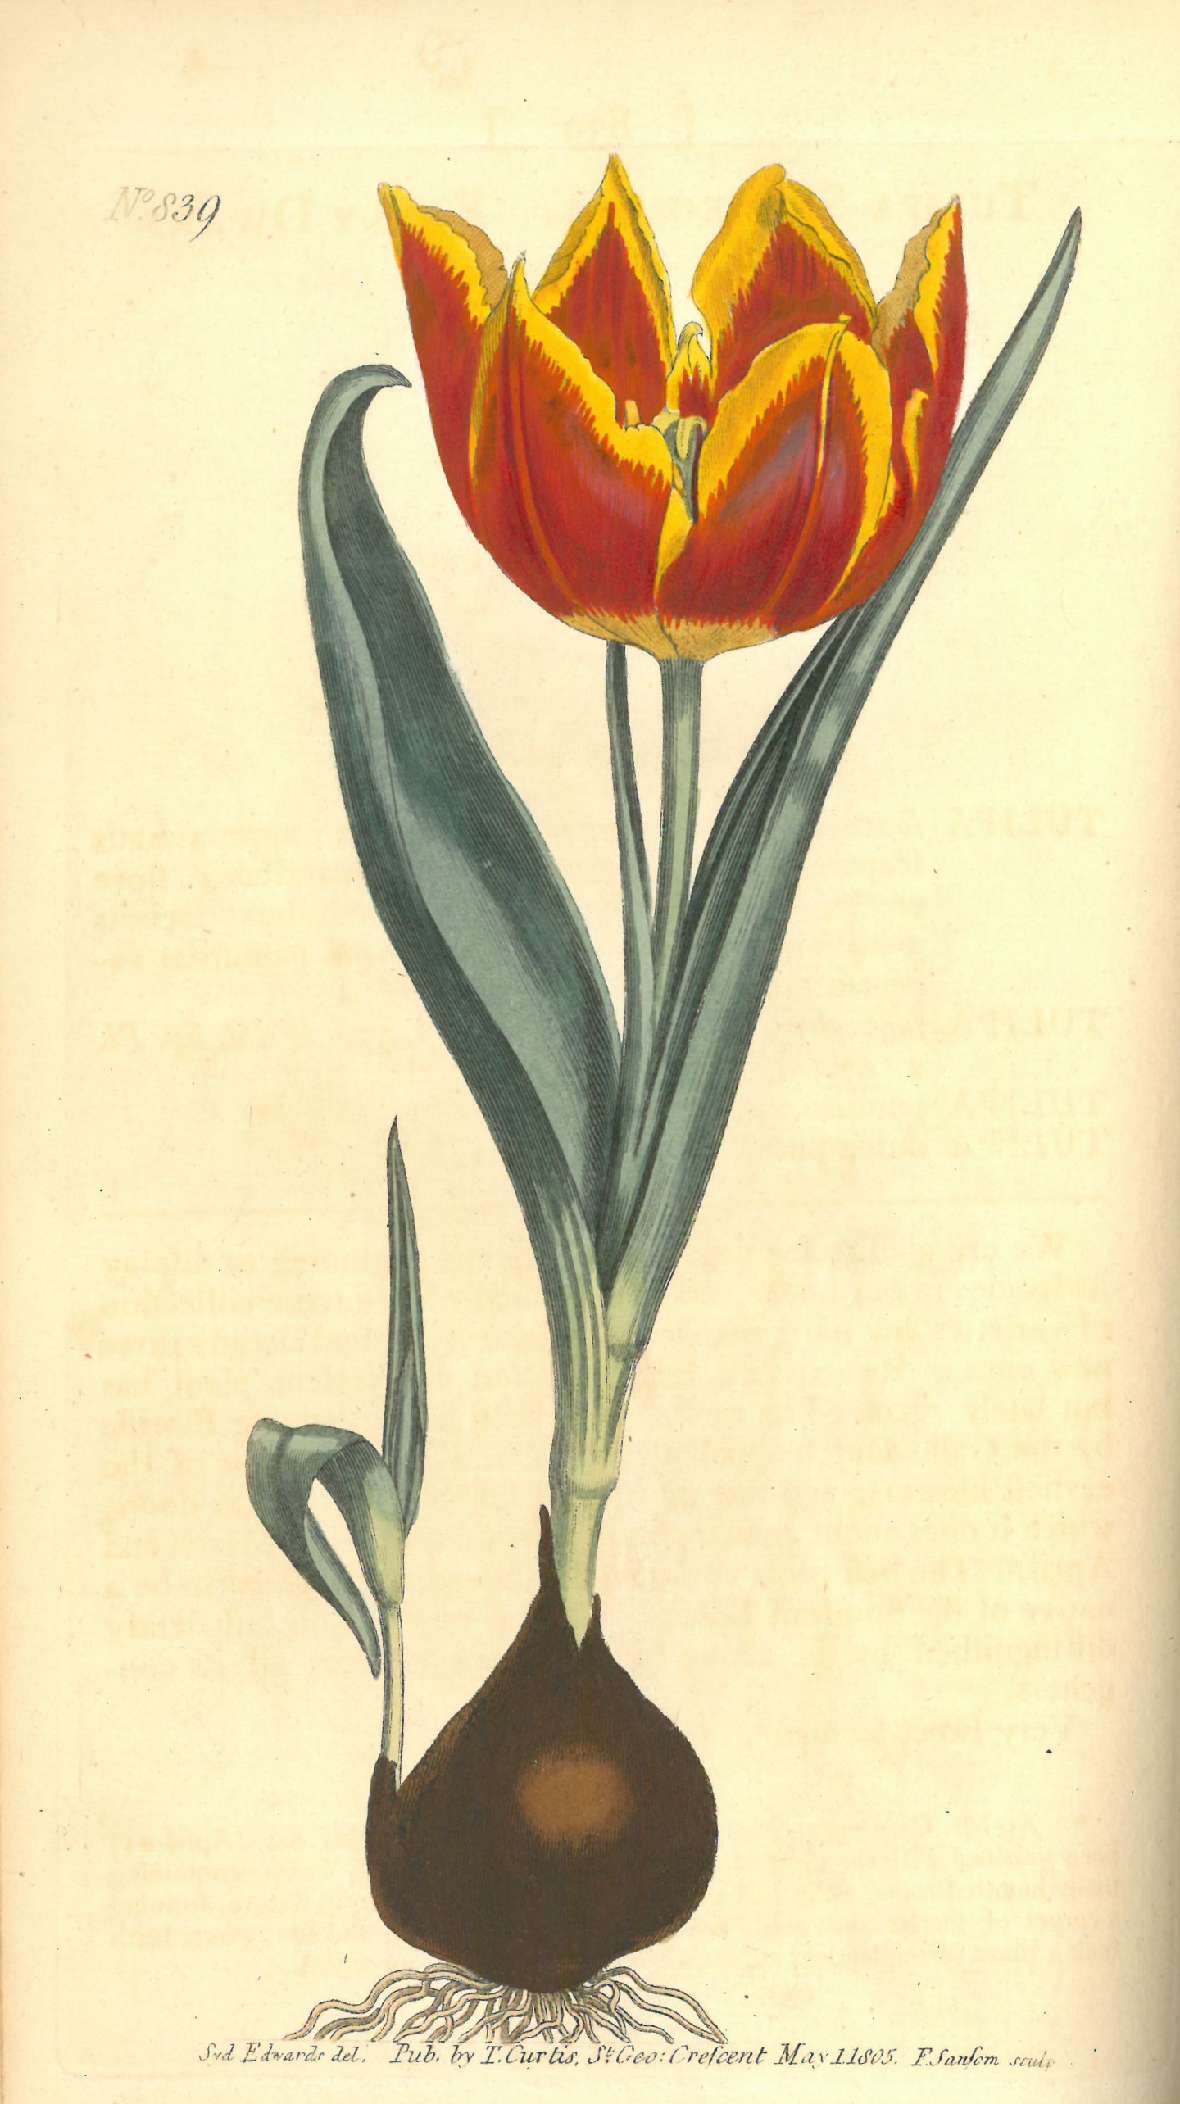 Botanische Illustration einer blühende Tulpe inklusive ihrer Zweibel